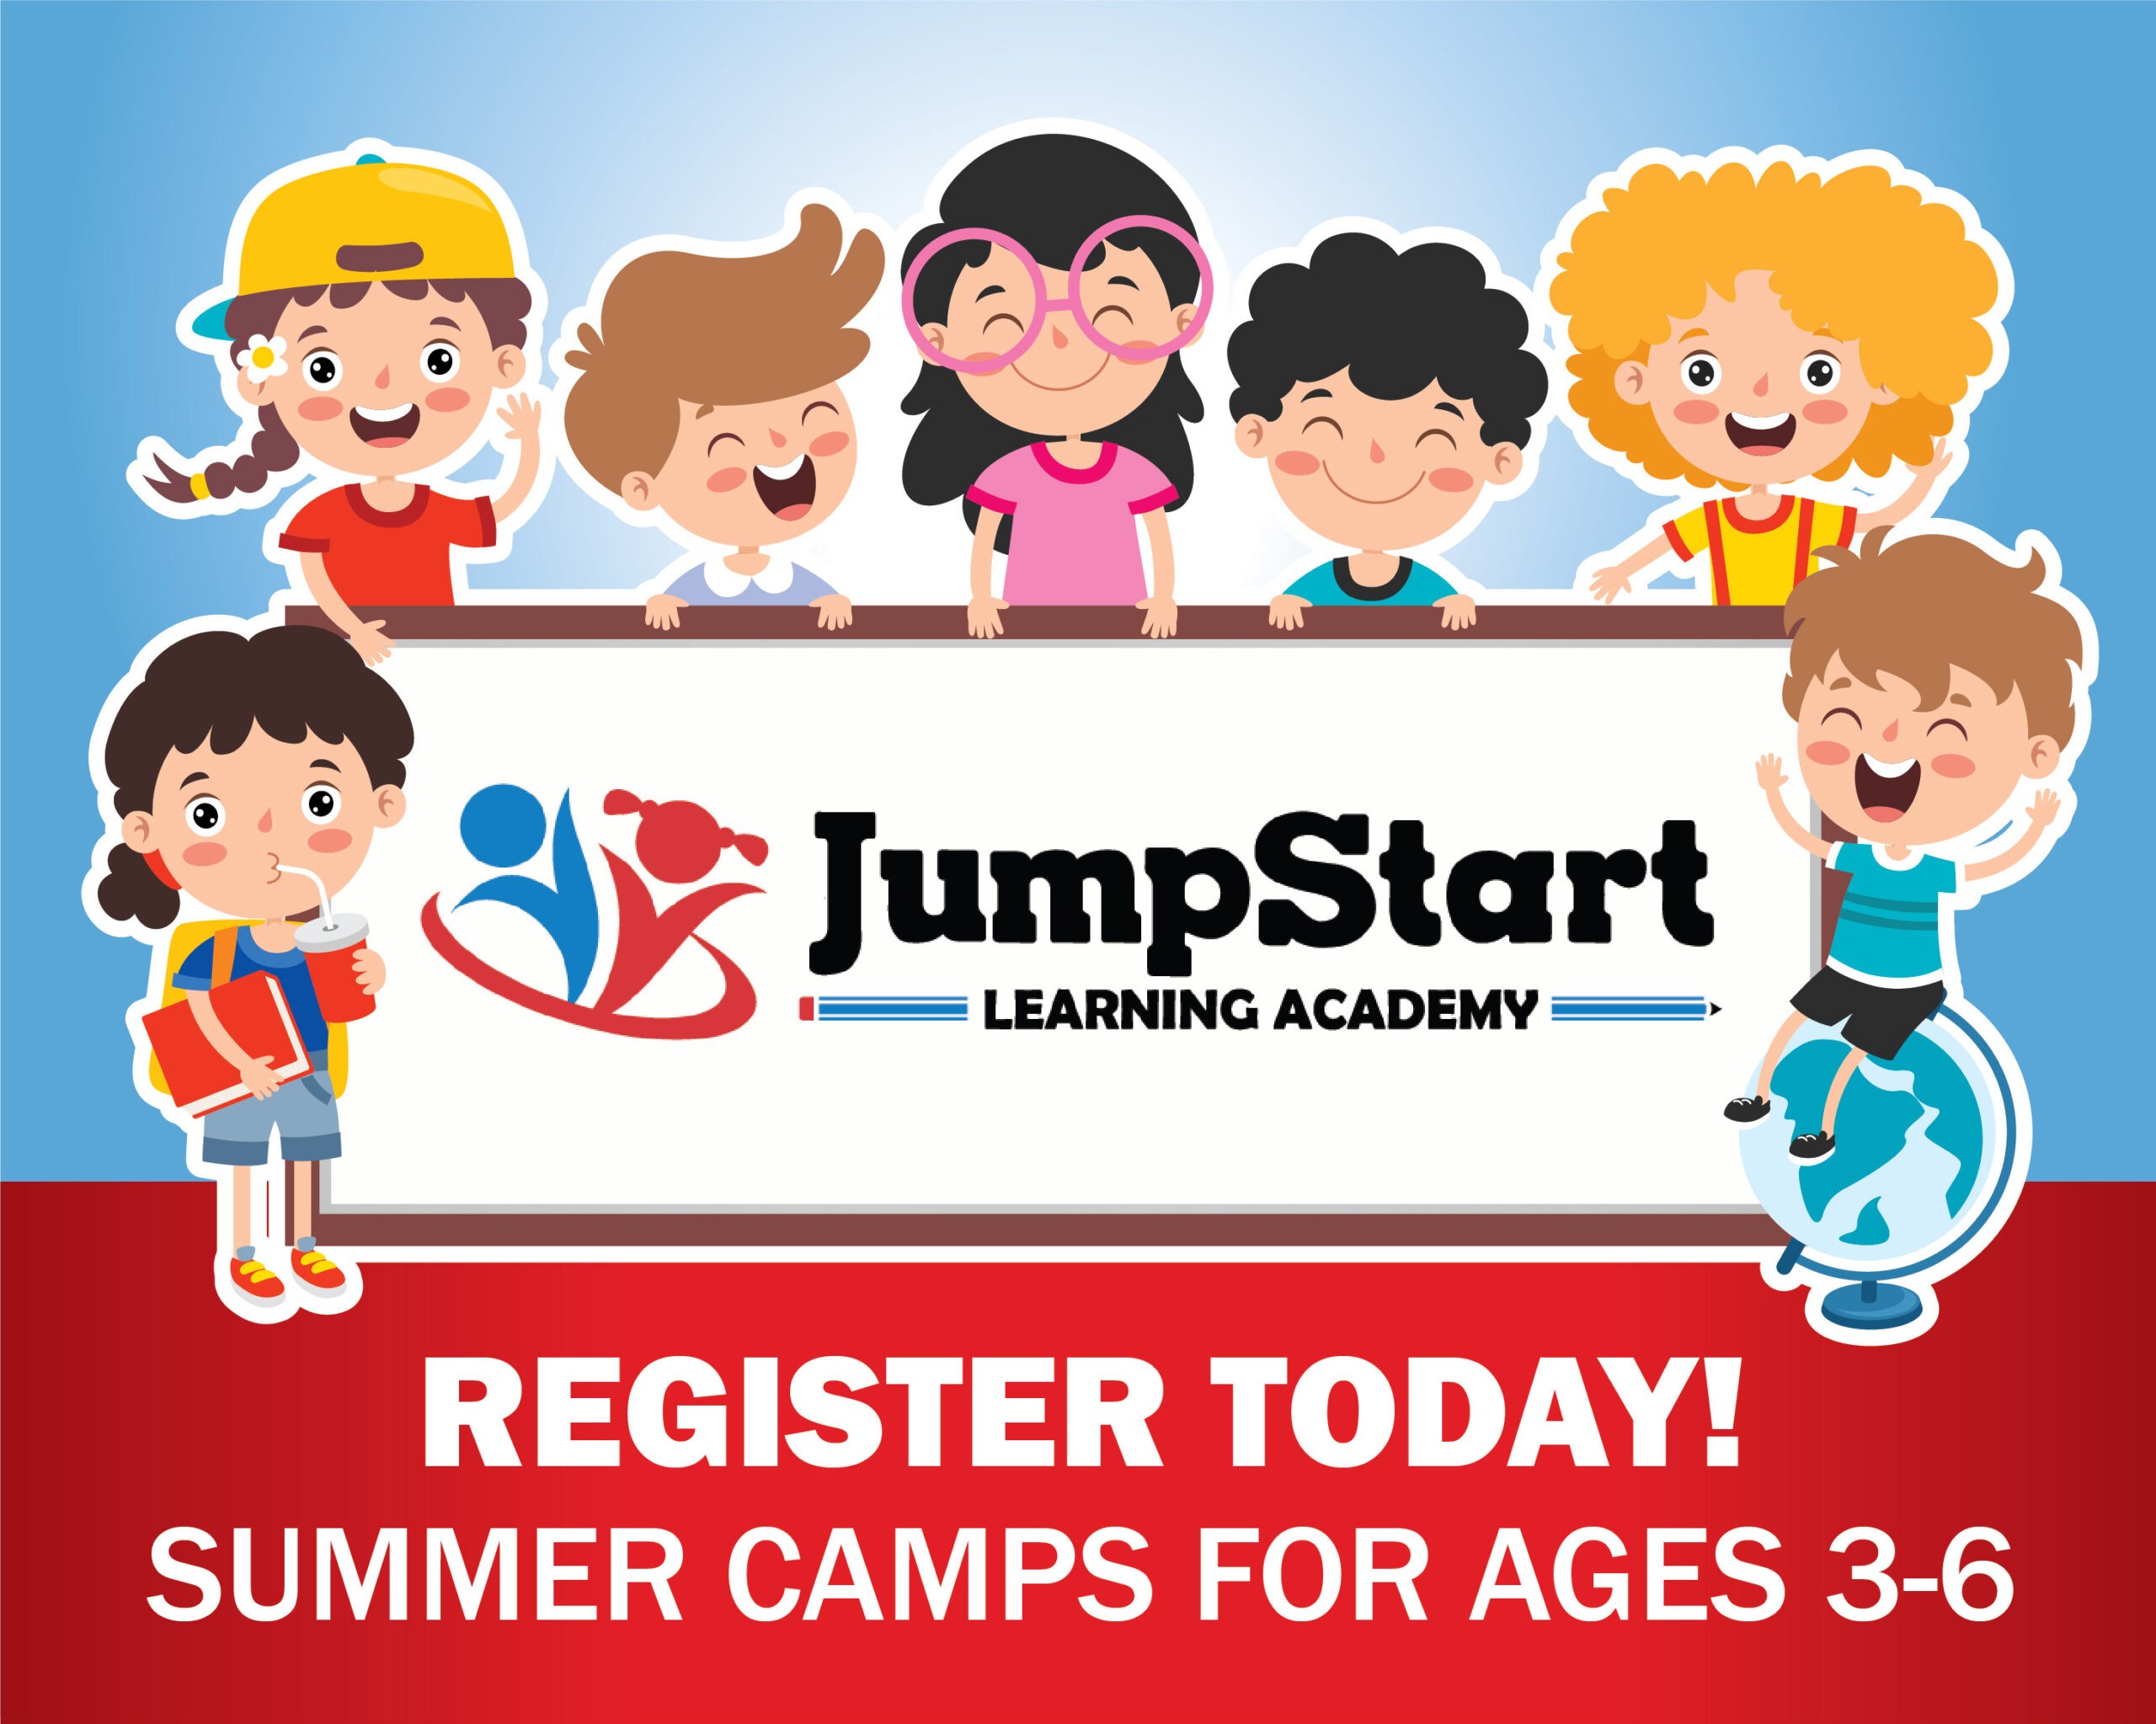 Jumpstart Learning Academy